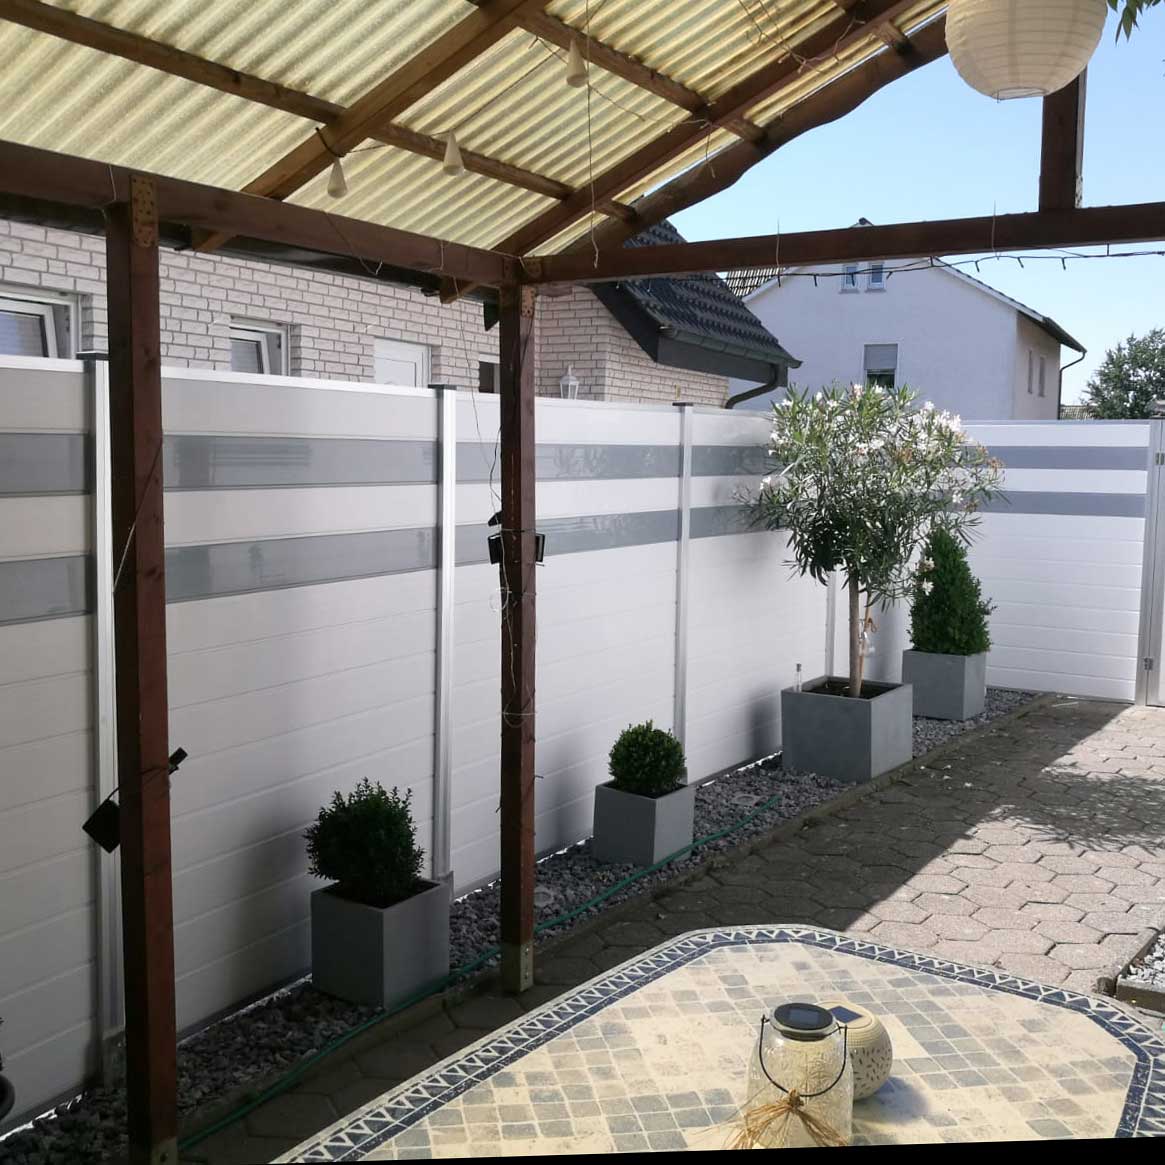 Sichtschutzwand im Hof in Weiß mit grauen Streifen aus Kunststoff